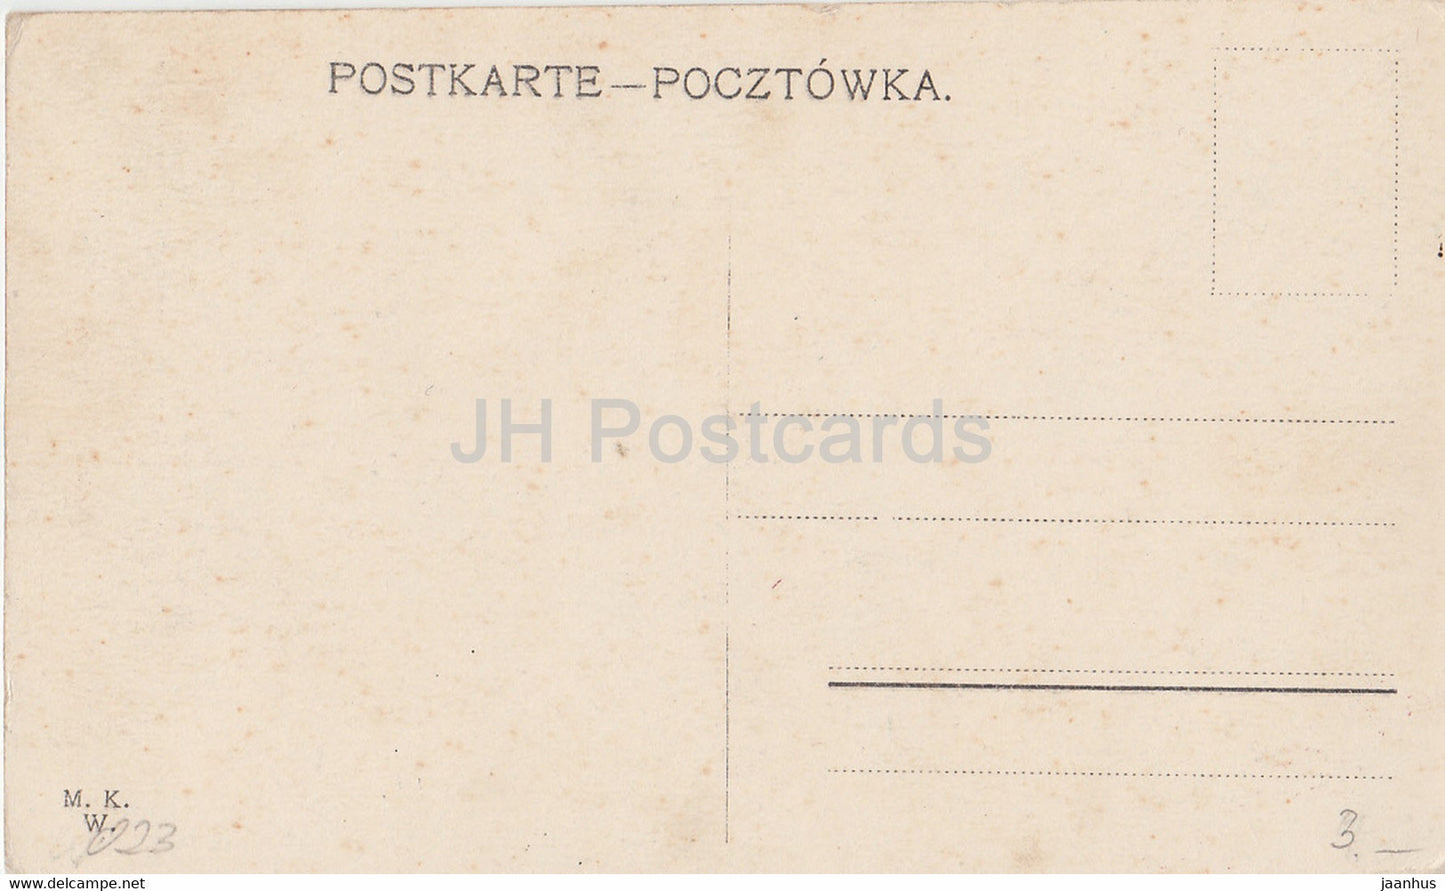 Warschau - Kierbedz Brucke - Warschau - Most Kierbedzia - Brücke - alte Postkarte - Polen - unbenutzt